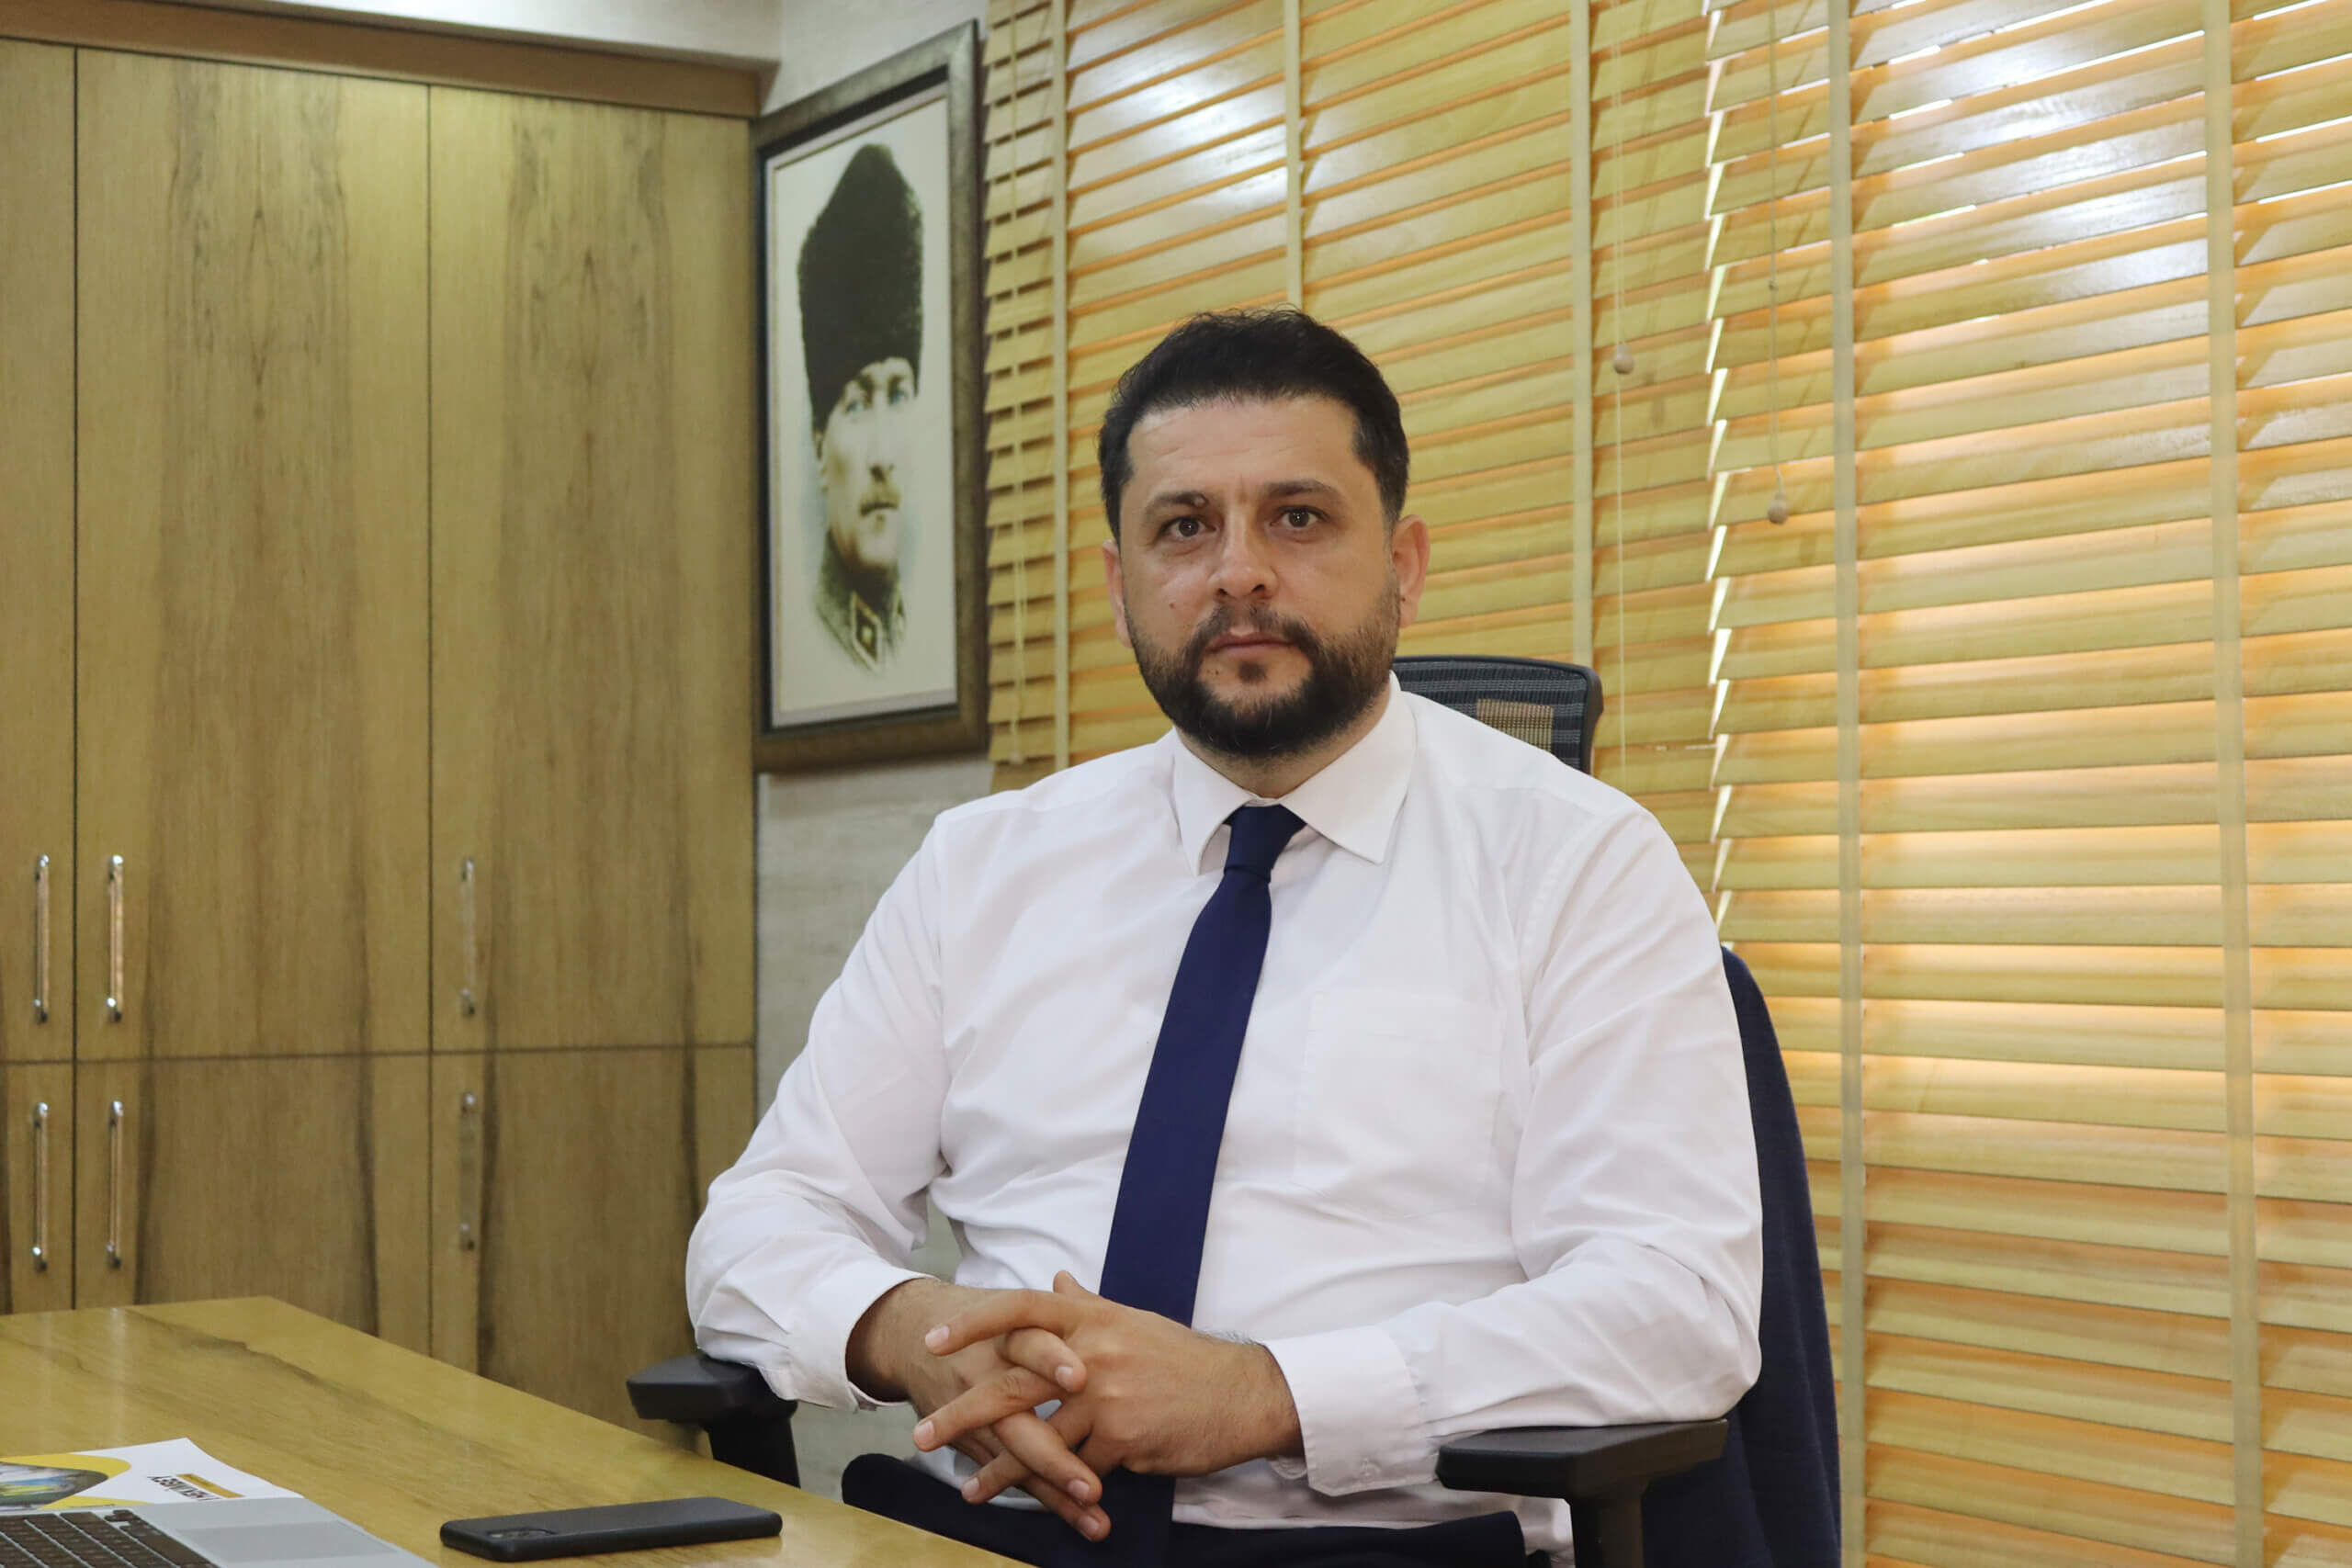 ATO Başkan Adayı Dr. Cengiz Yılmaz: “Hedef Adana için umut, renk mavi”